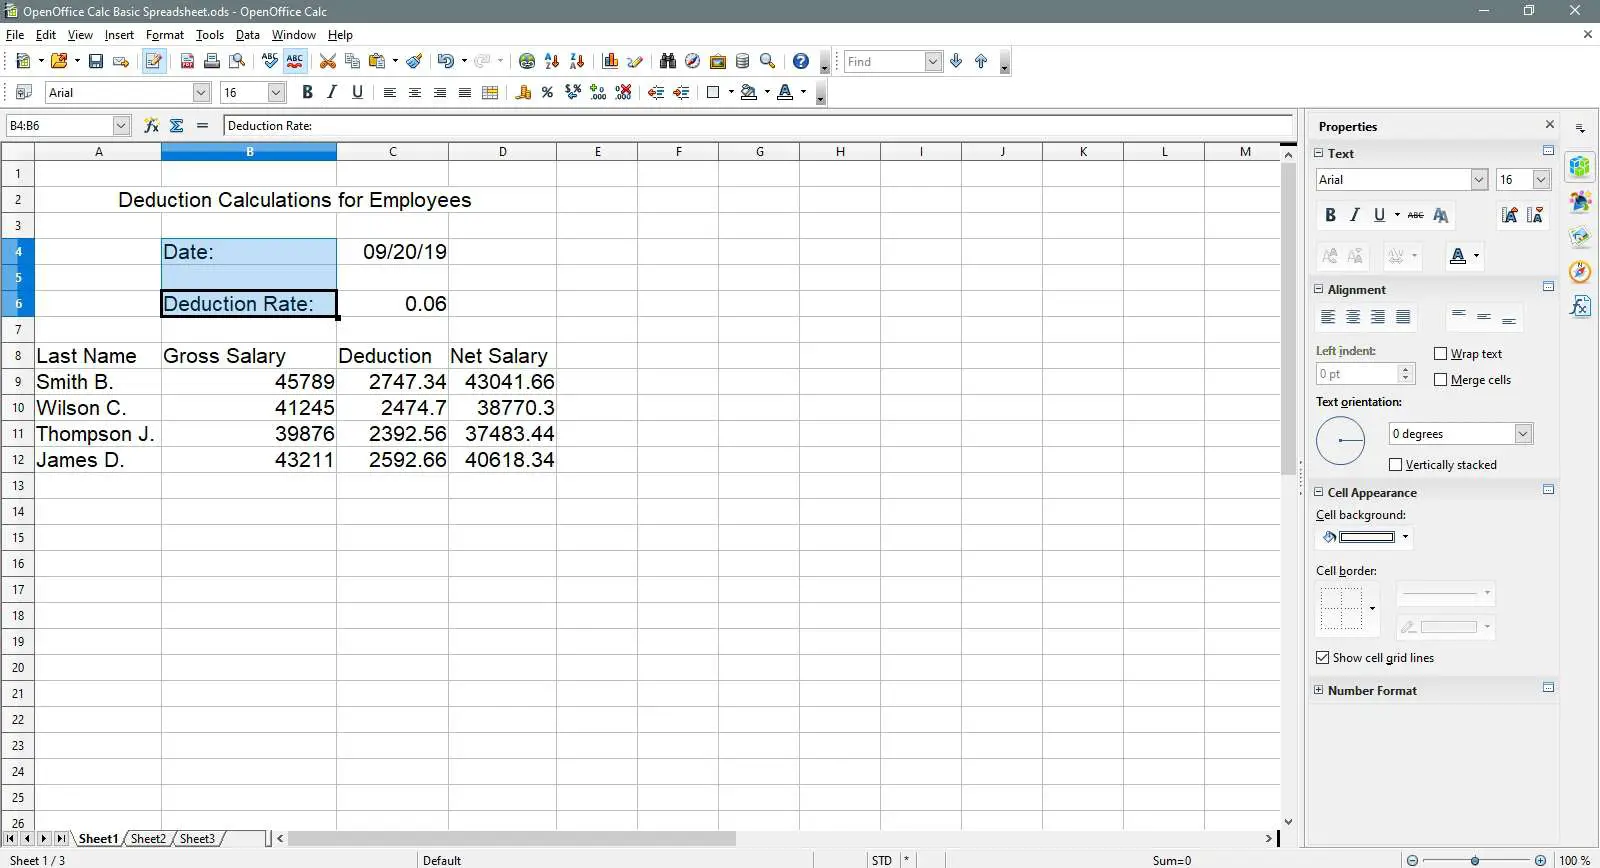 As células de data e taxa de dedução são selecionadas no OpenOffice Calc.